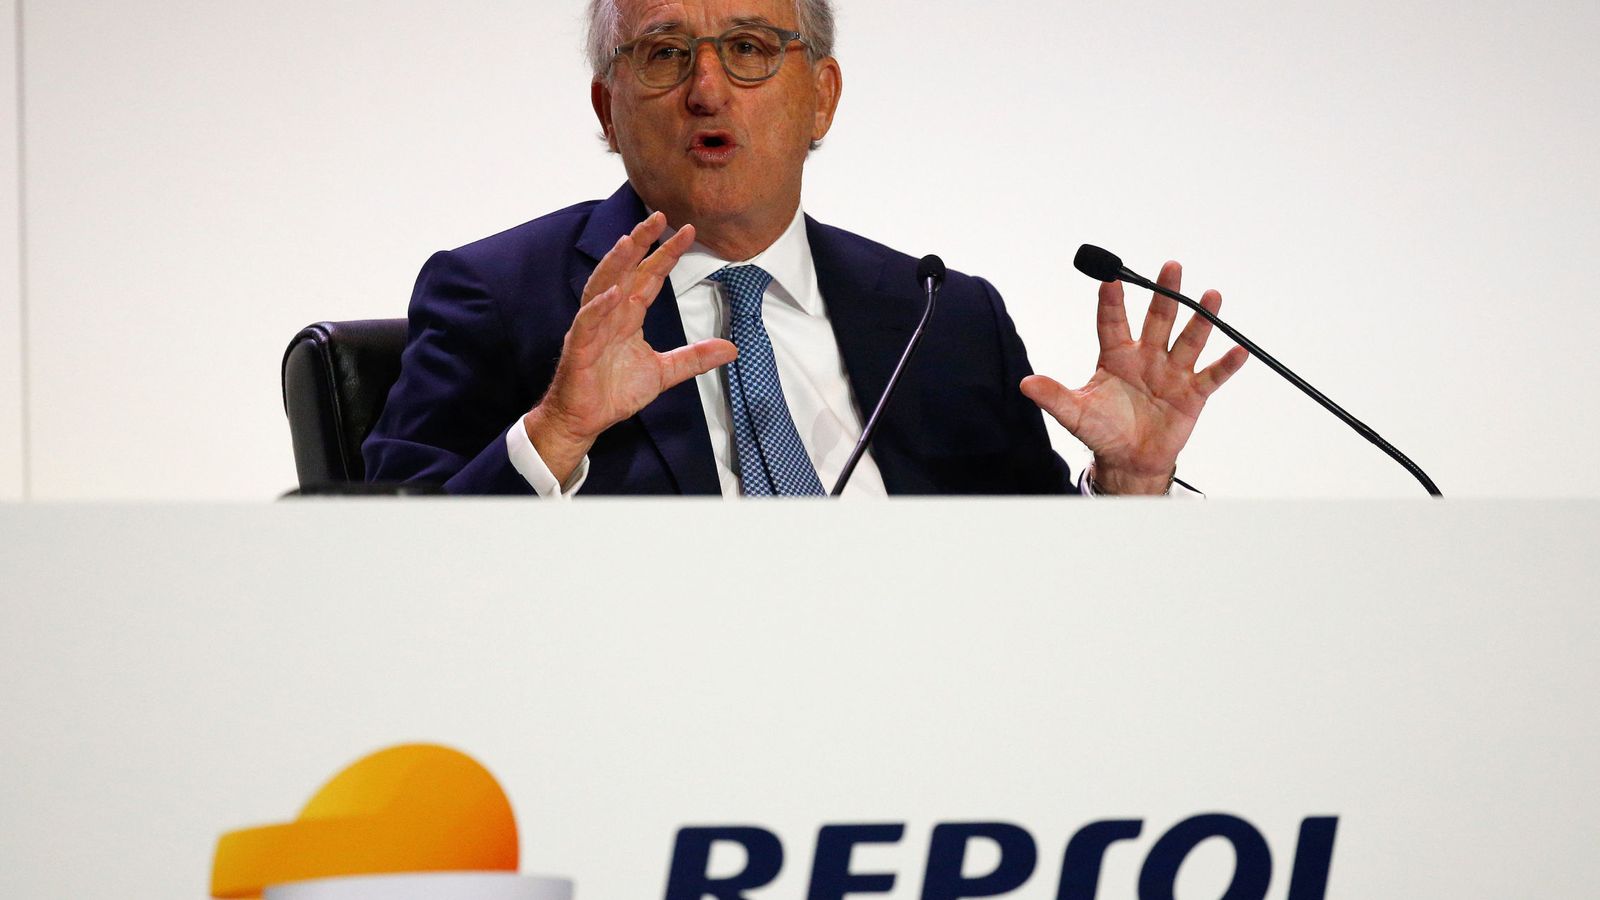 Foto: El presidente de Repsol, Antonio Brufau, durante su intervención en una junta de accionistas de la compañía. (Reuters)